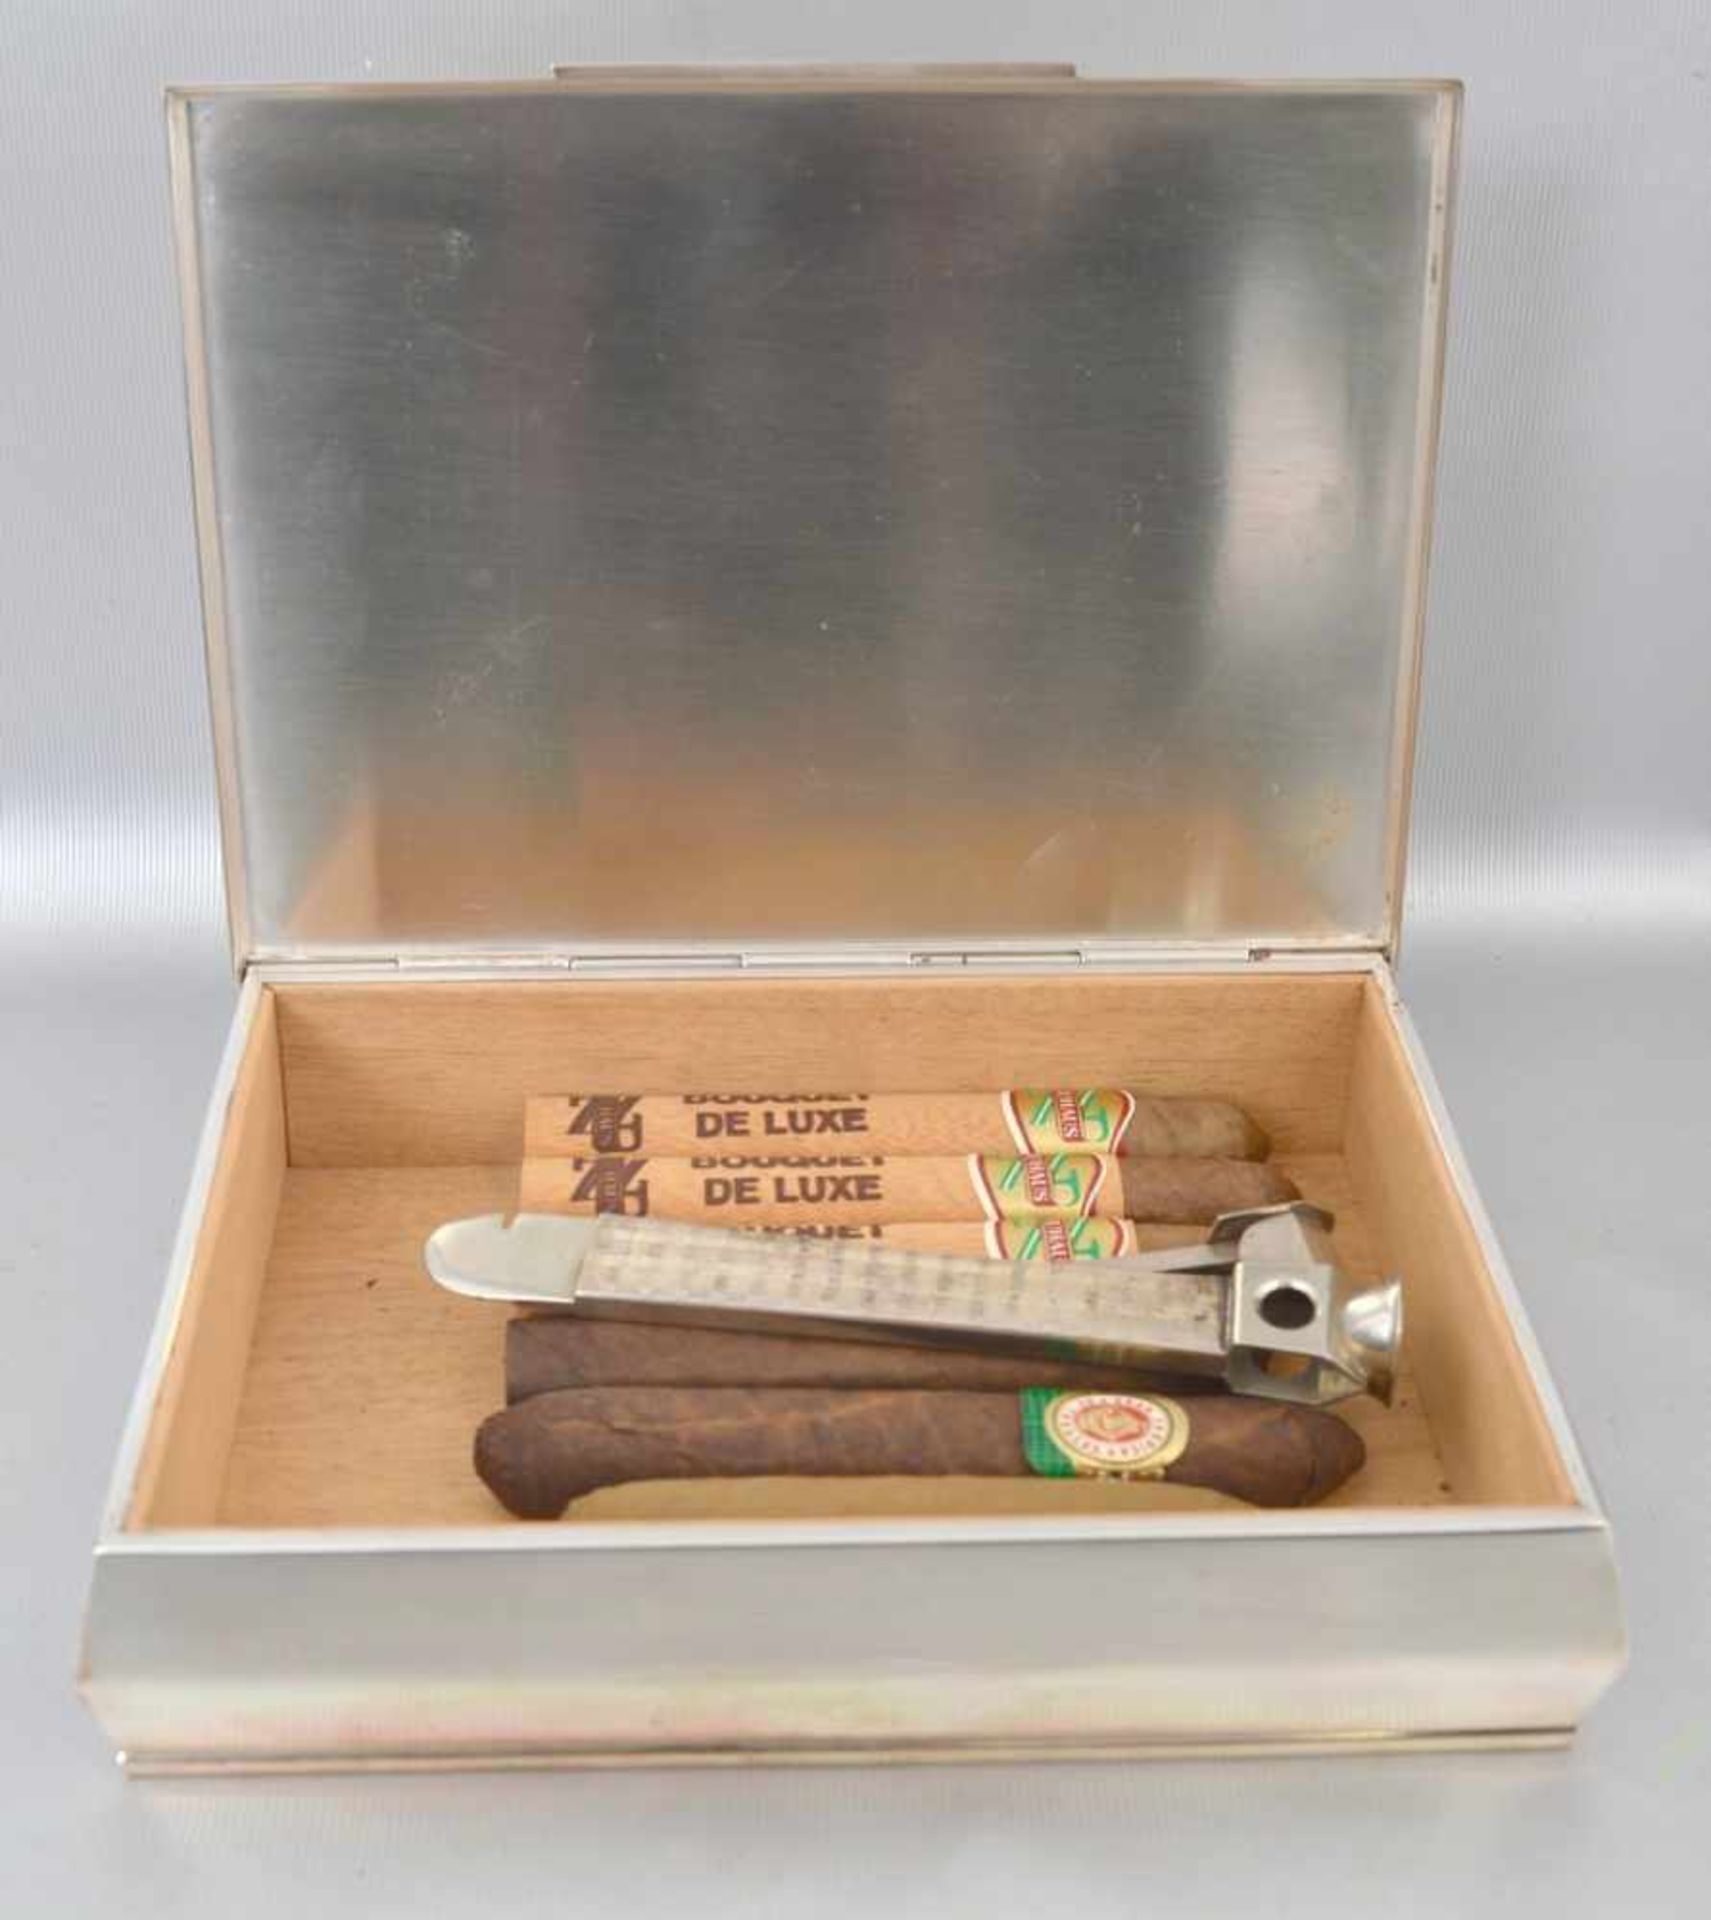 Zigarettendoserechteckig, Holzboden, schlichte Ausführung, 925er Silber, mit Zigarrenschneider